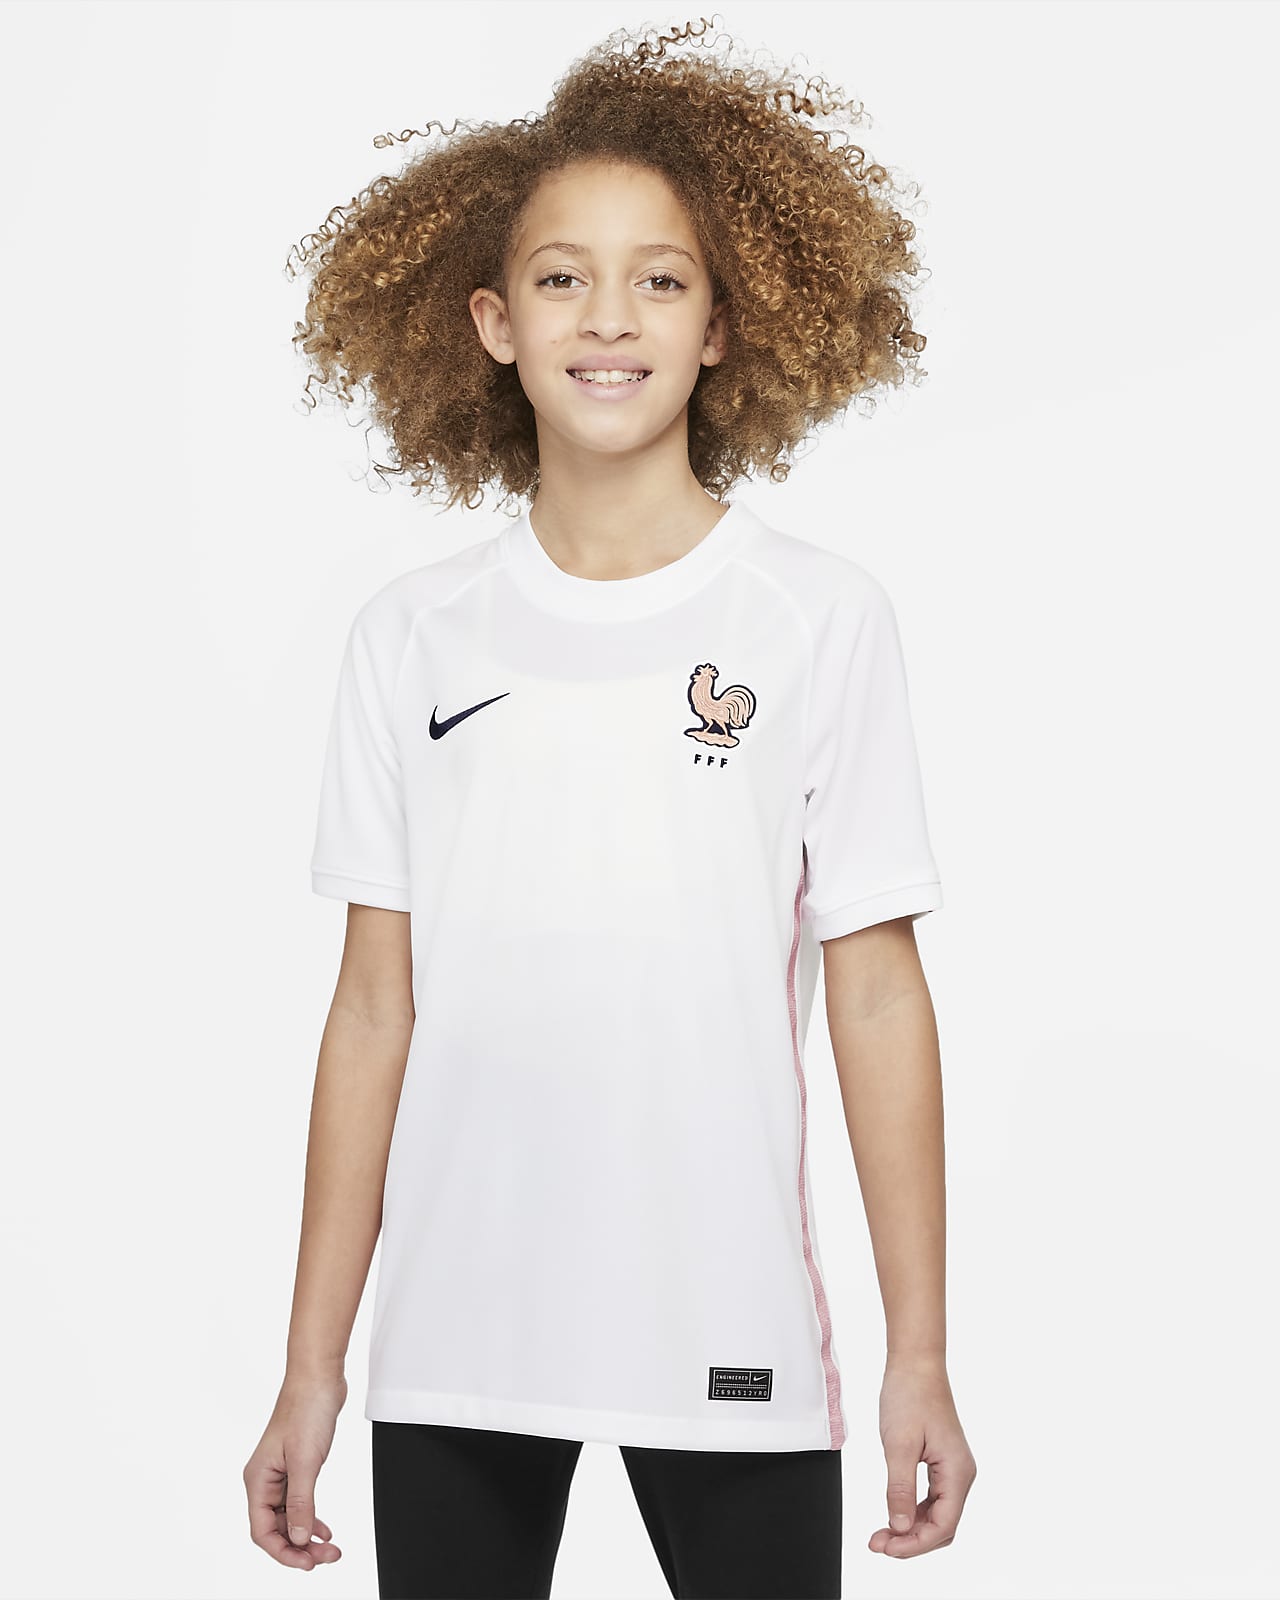 Nabo lanzador posponer Jersey de fútbol Nike Dri-FIT para niños talla grande de Francia visitante  2022 Stadium. Nike.com